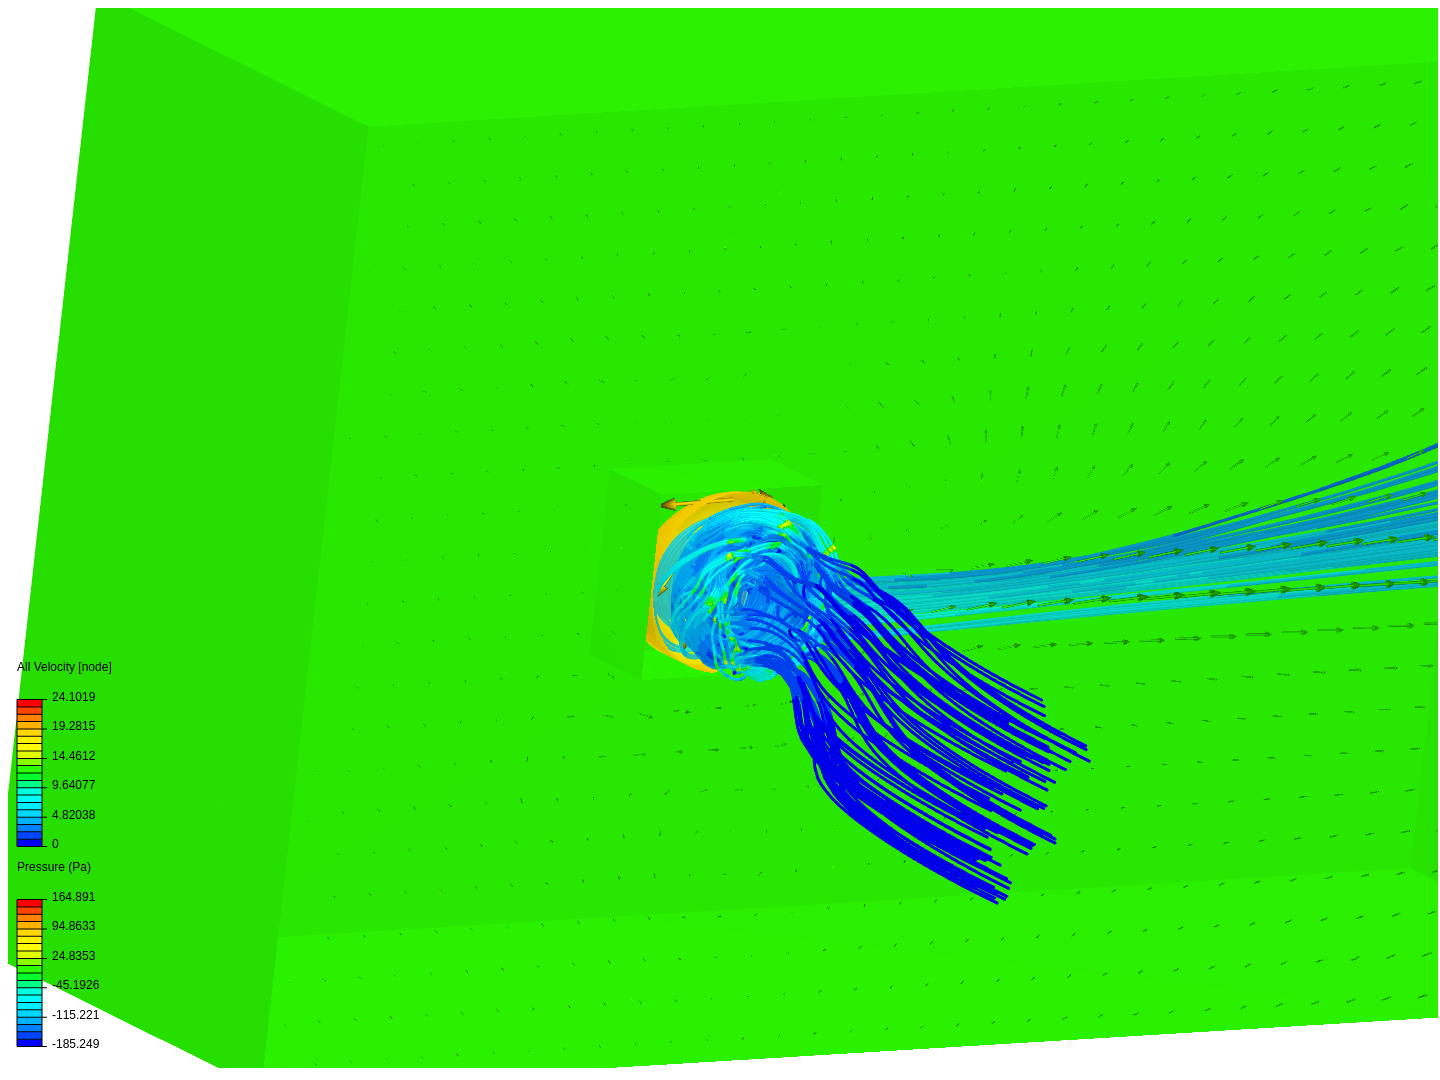 sunon 404010 fan flow field visualization sample image